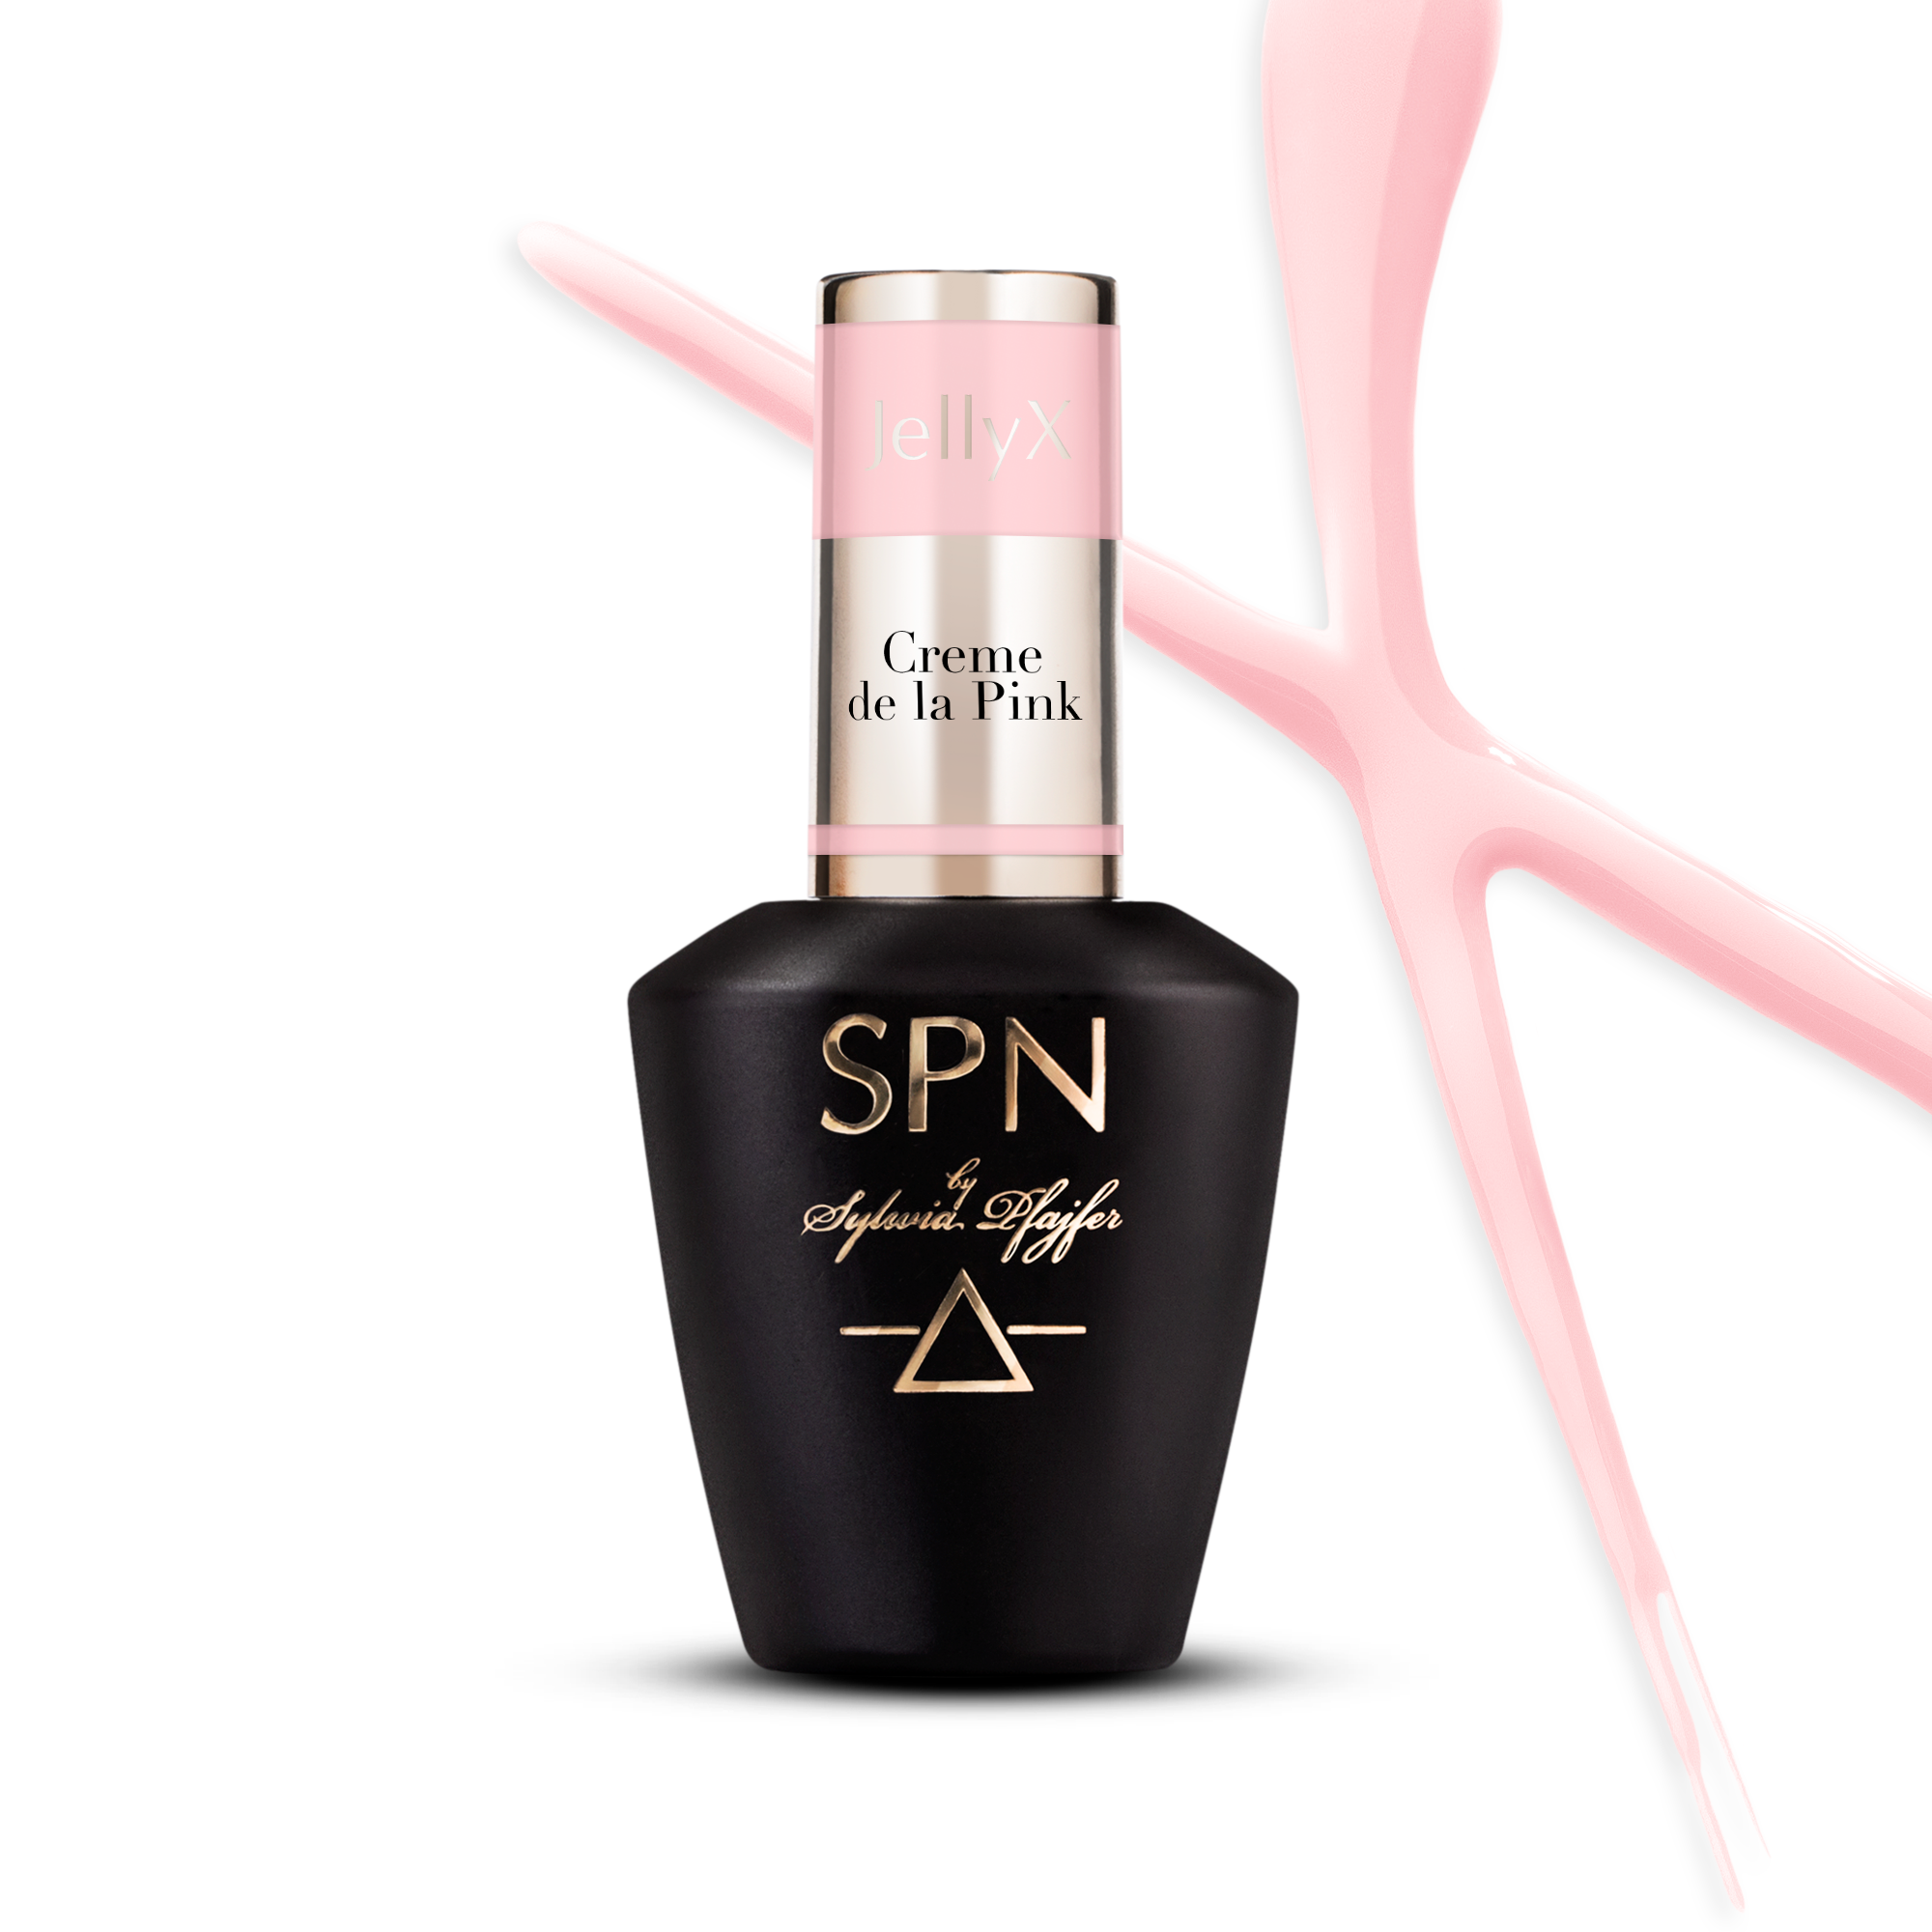 SPN Nails - Gel in a bottle JellyX Creme de la Pink 8 ml